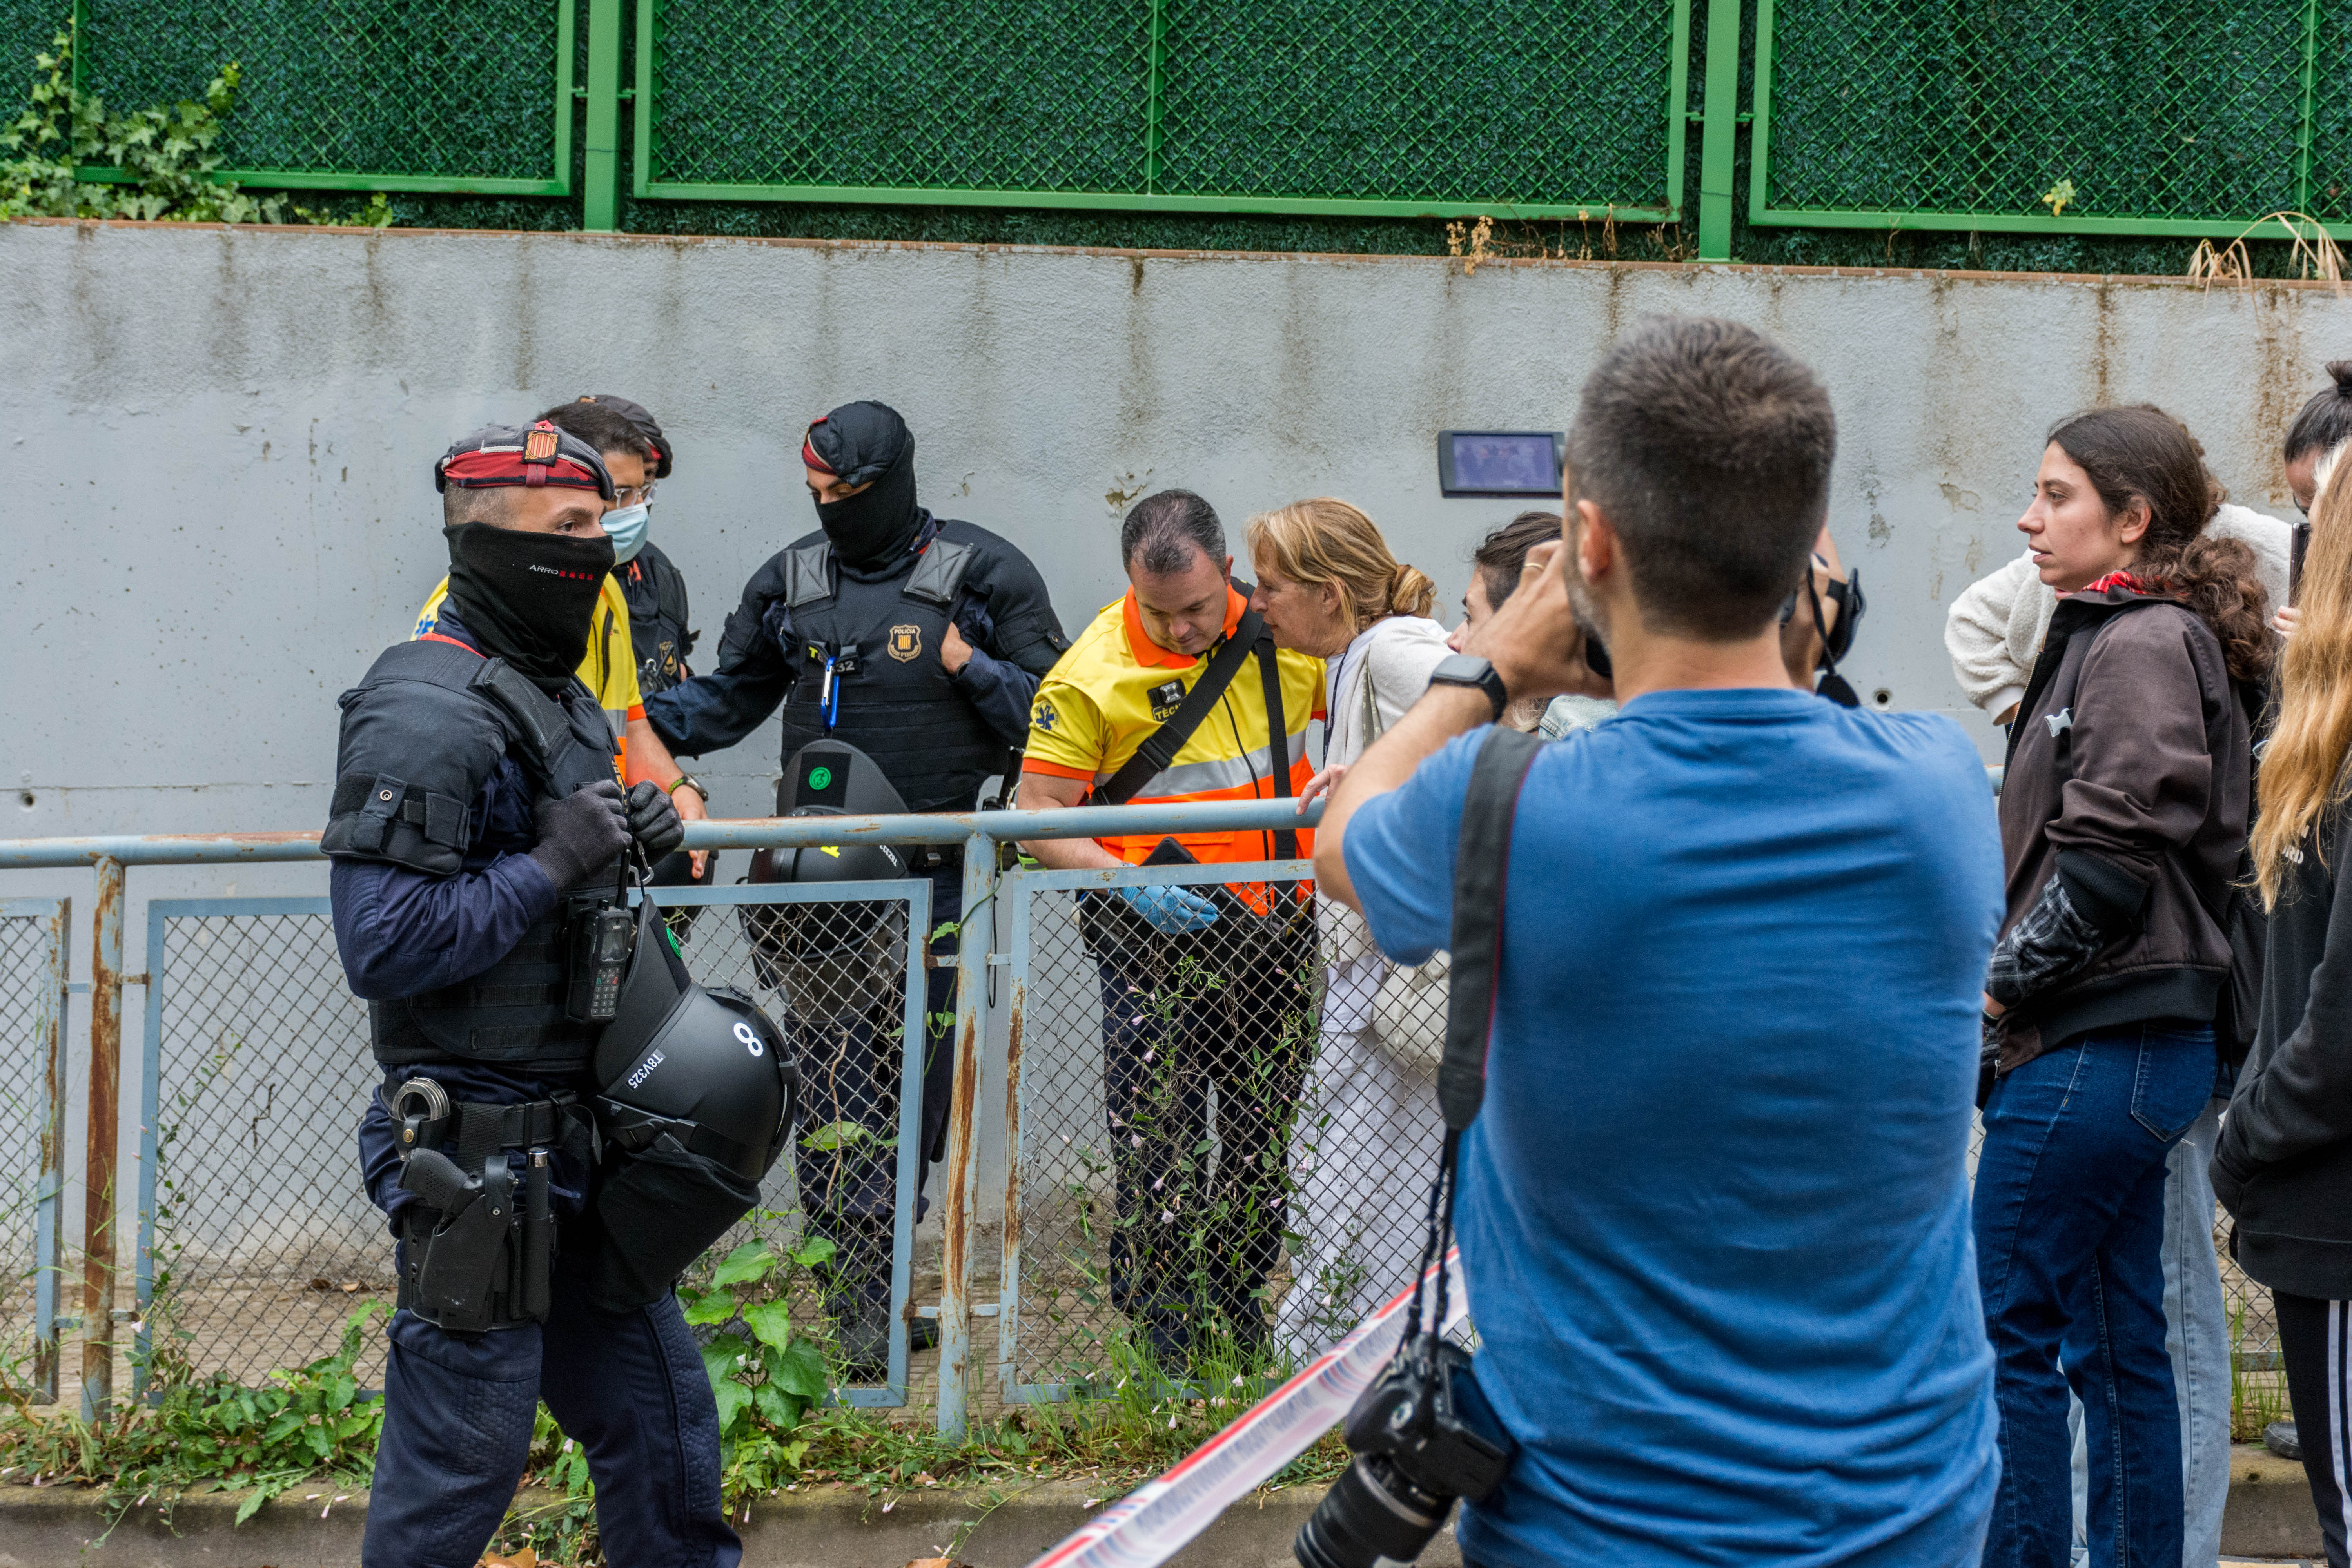 Serveis d'emergències i Bombers de la Generalitat també han assistit al lloc FOTO: Carmelo Jiménez